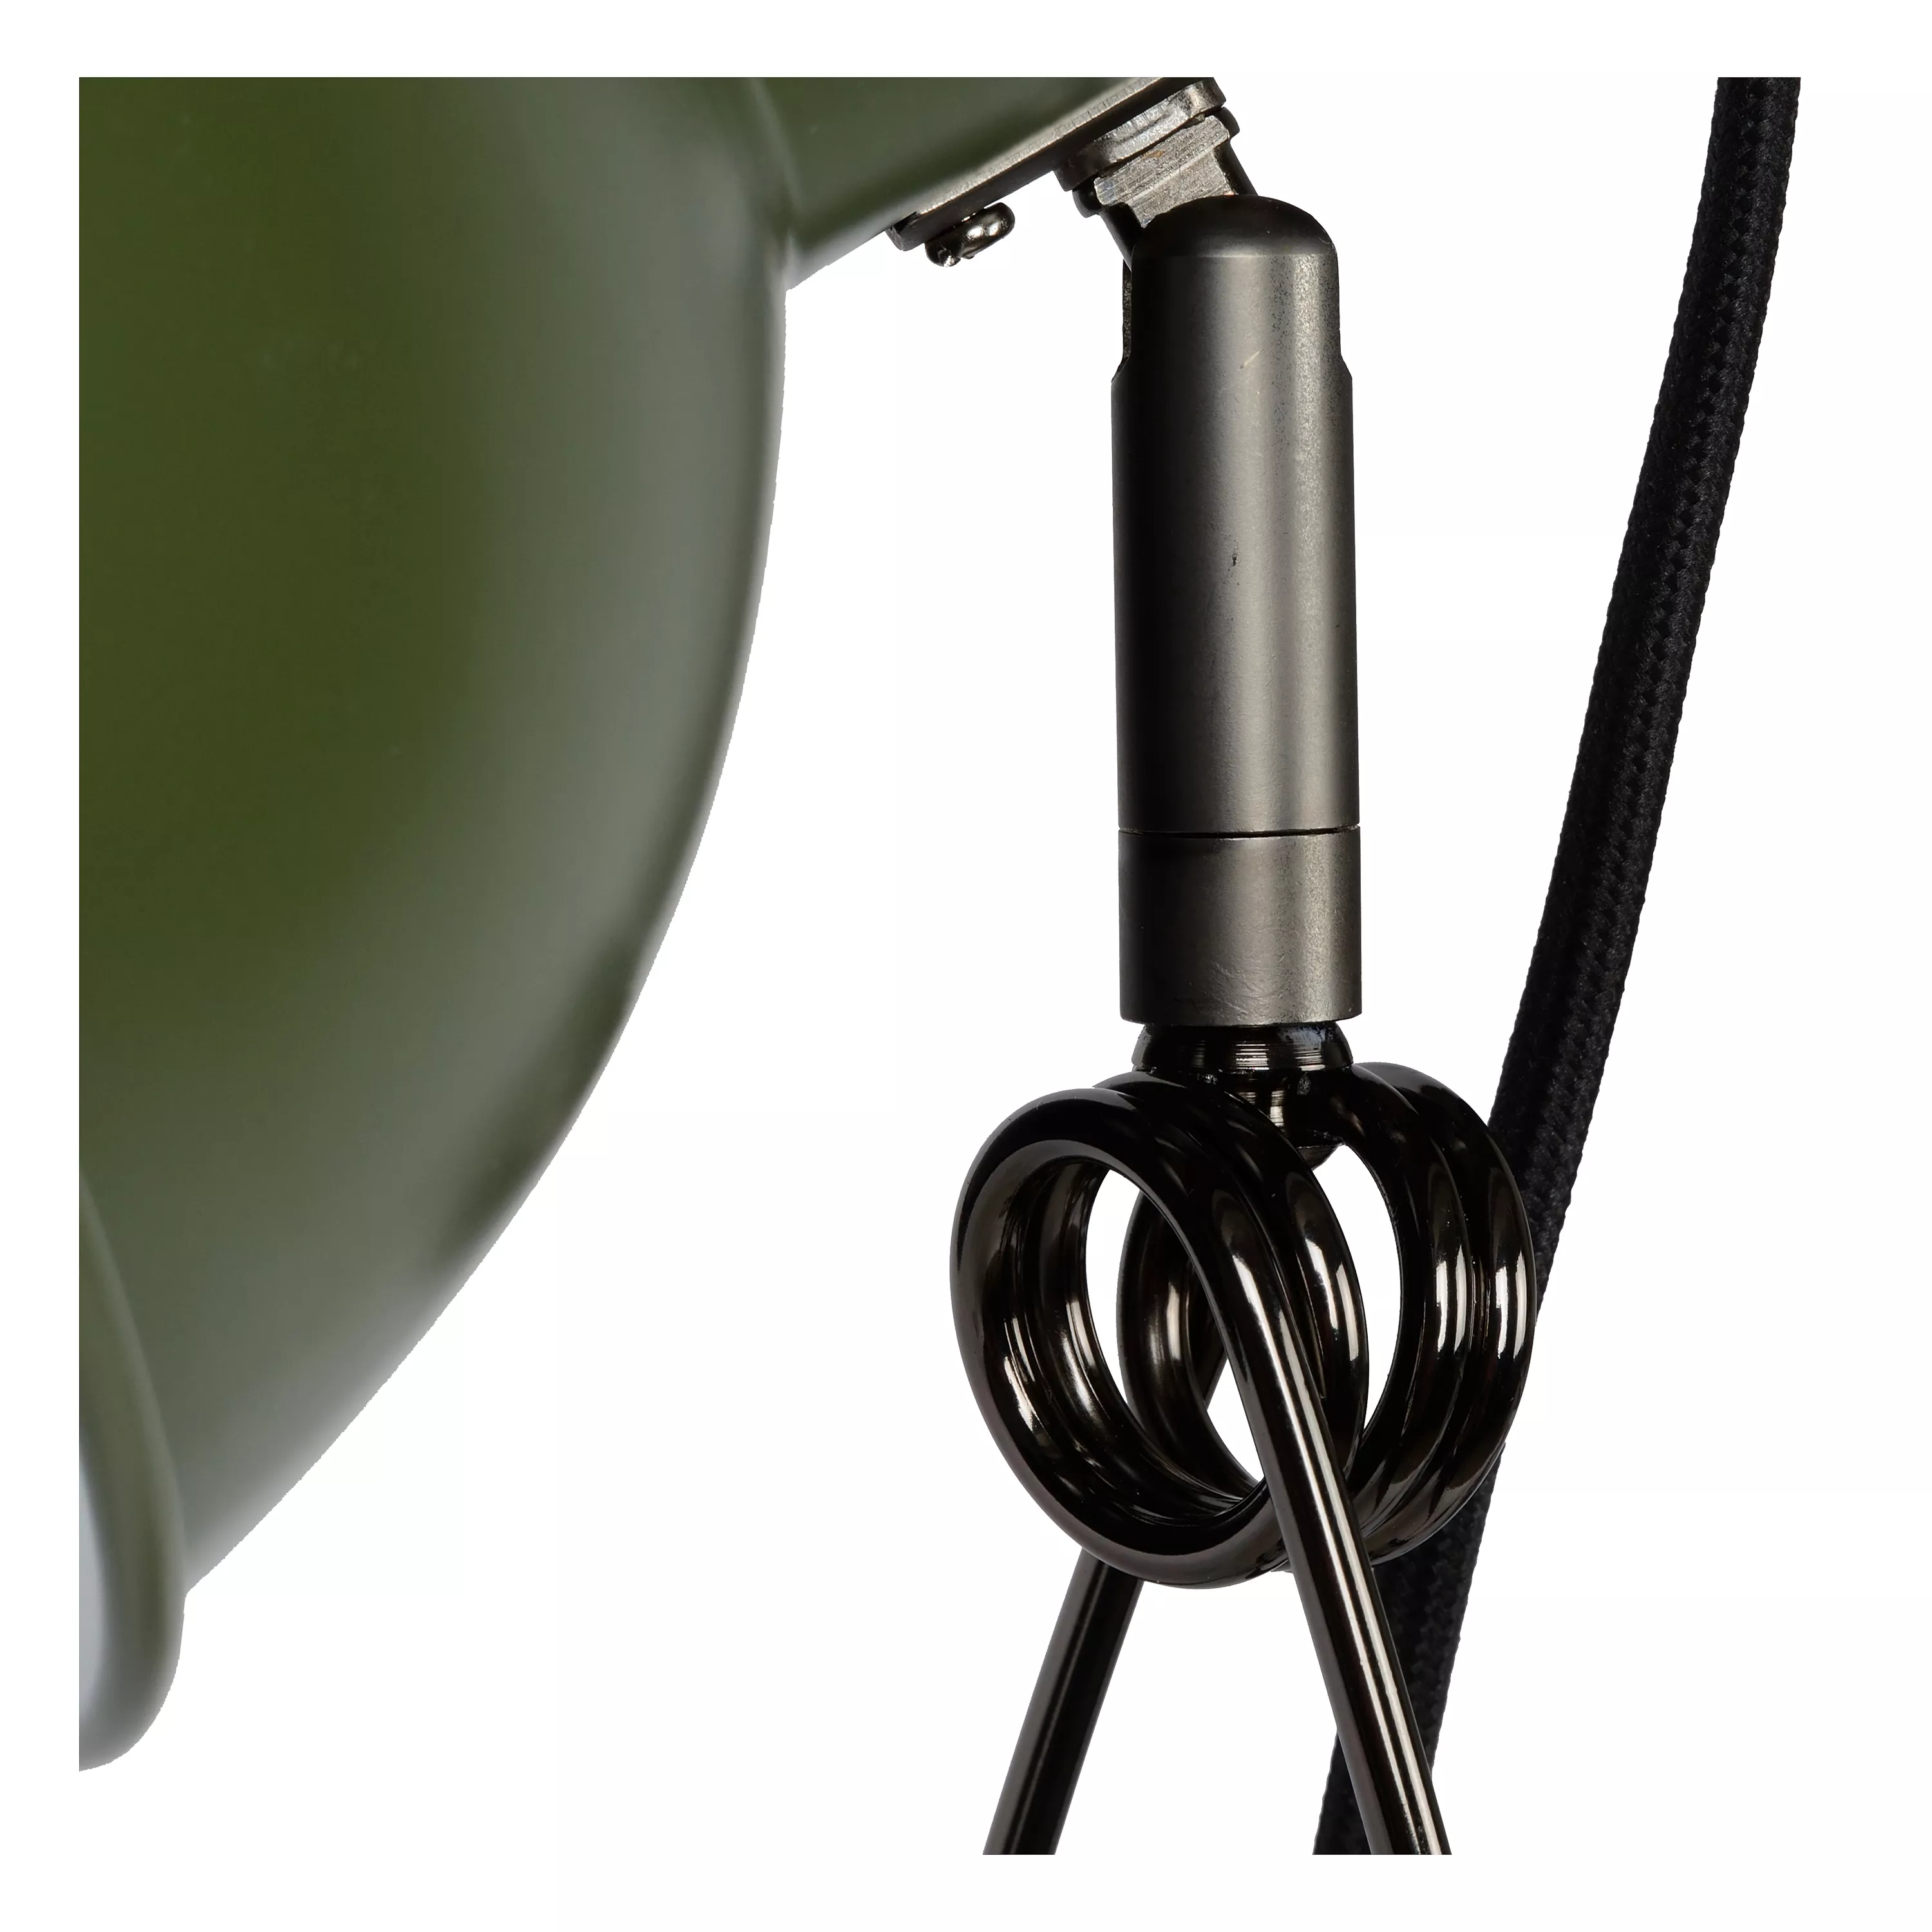 Flexibilní lampičku Moys s klipem využijete téměř všude díky upínací sponě, disponuje navíc směrovatelnou hlavou i ramenem.